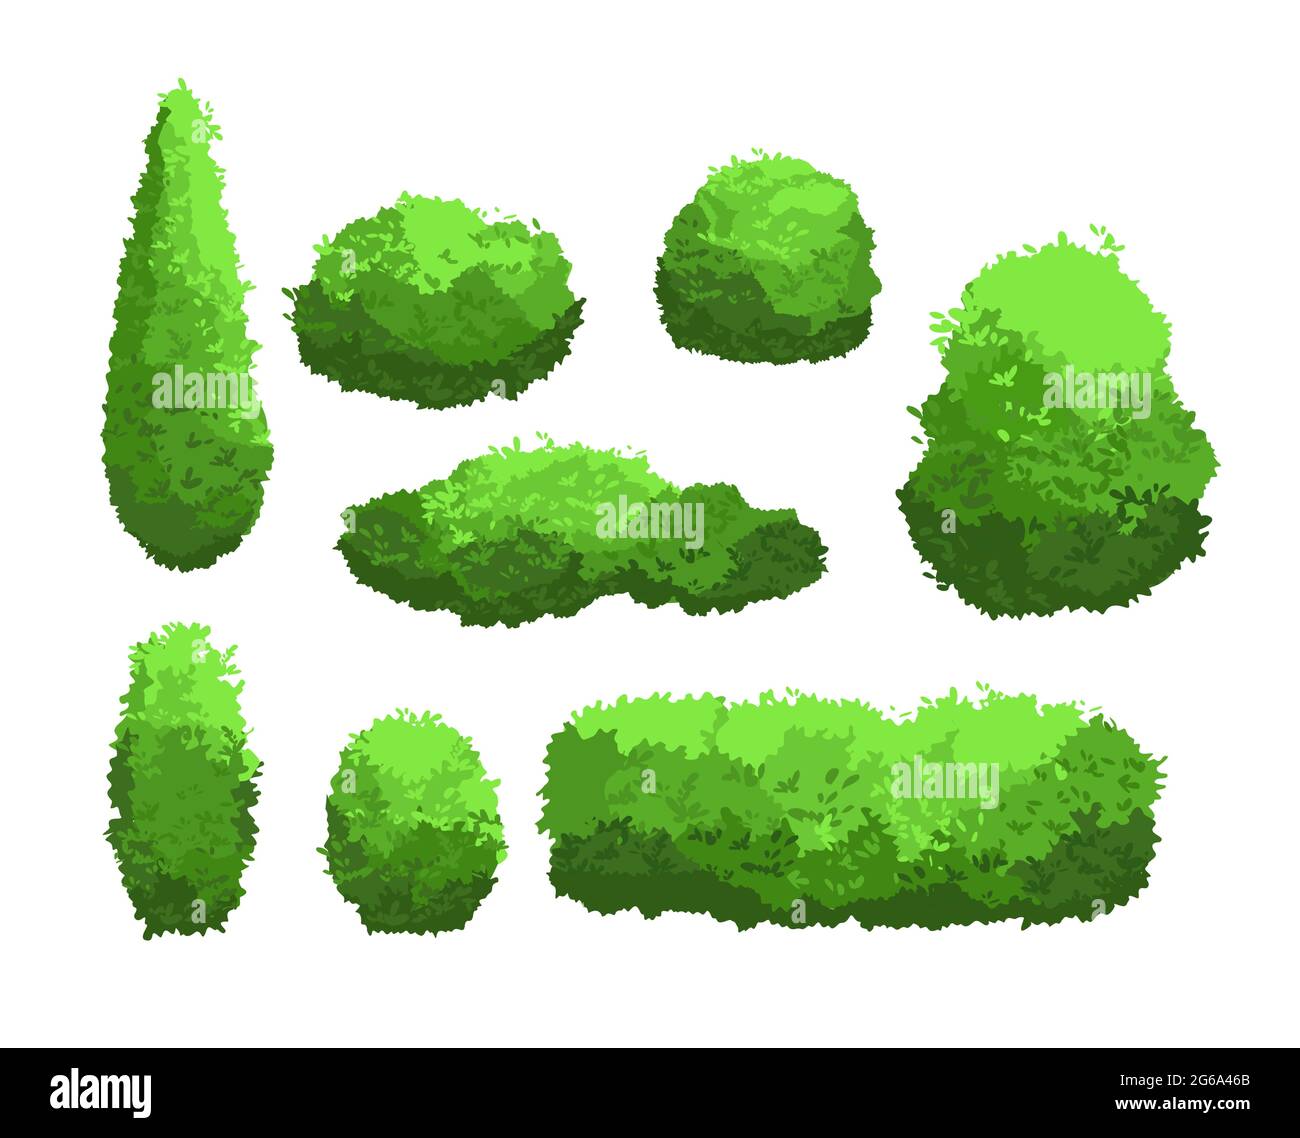 Vektor-Illustration Set von Garten grünen Büschen und dekorativen Bäumen. Strauch- und Buschkollektion im Cartoon-Stil isoliert auf weißem Hintergrund. Stock Vektor